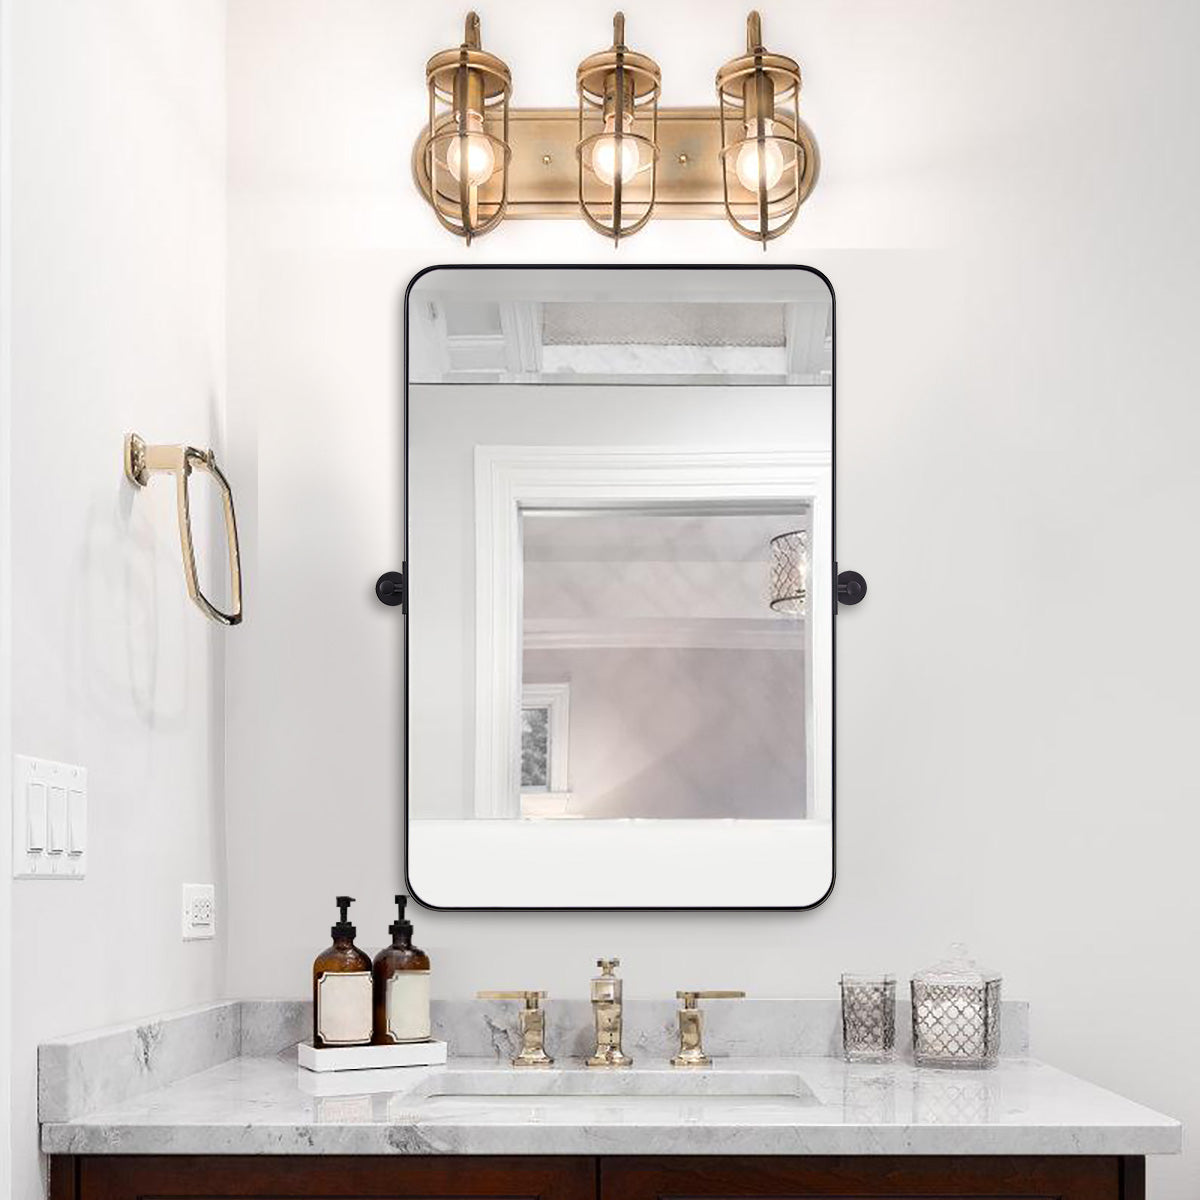 Matte Black Pivot Tilt Rectangle Bathroom/ Vanity Mirrors | Stainless Steel Frame